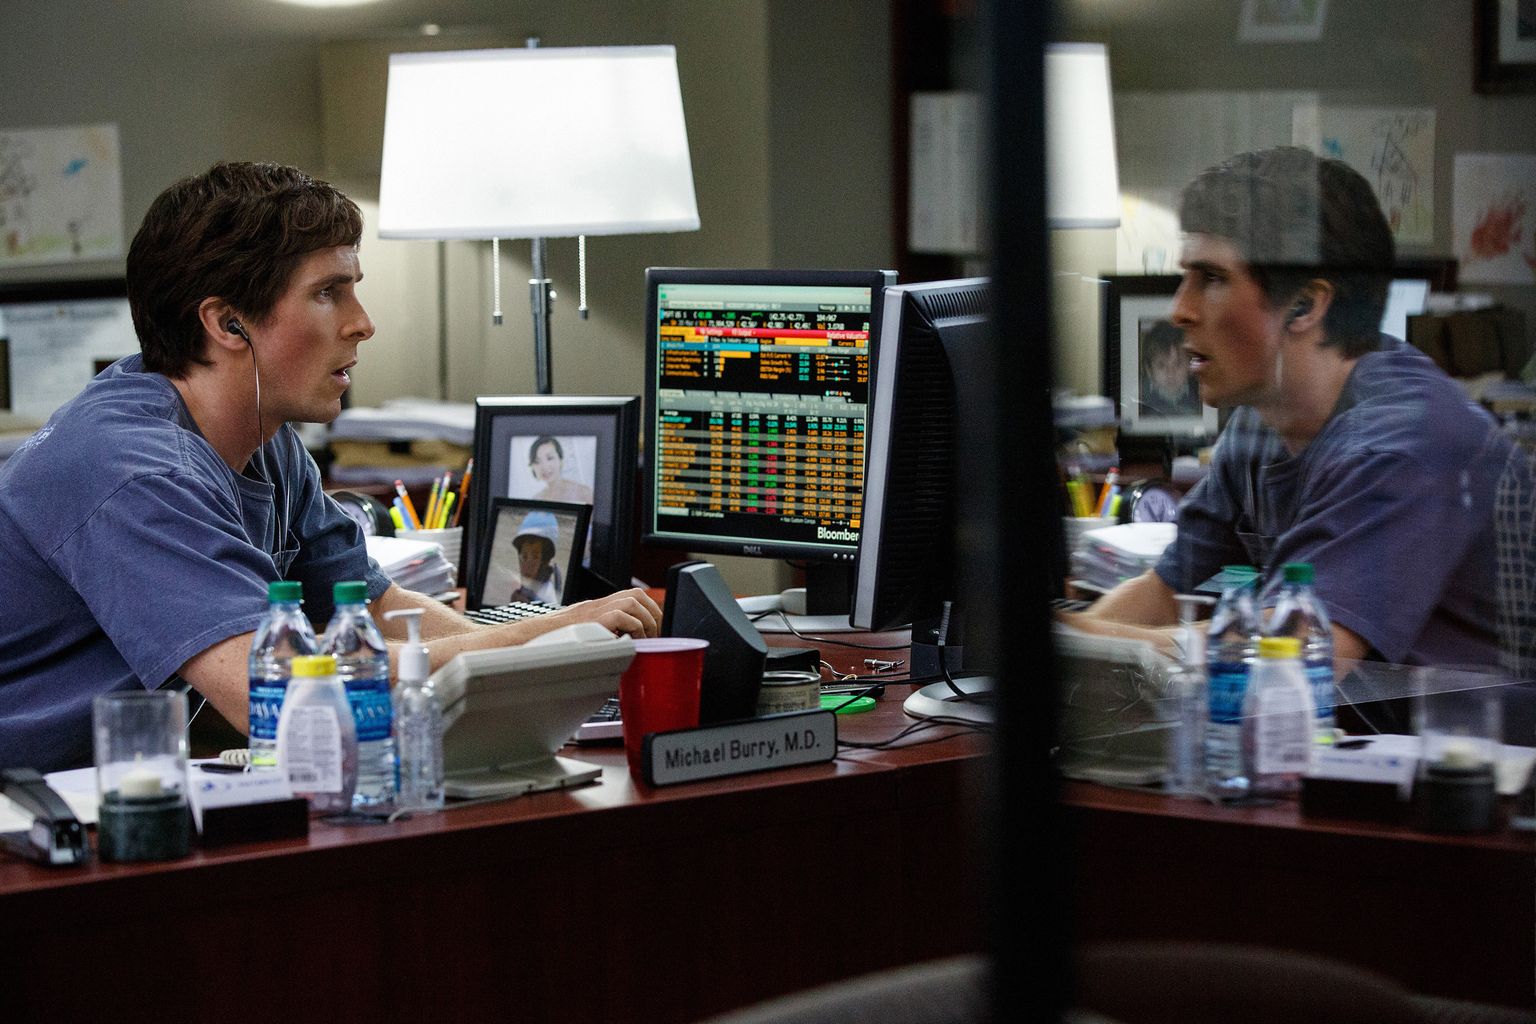 Christian Bale kujutamas Michael Burryt filmis "Suur vale".